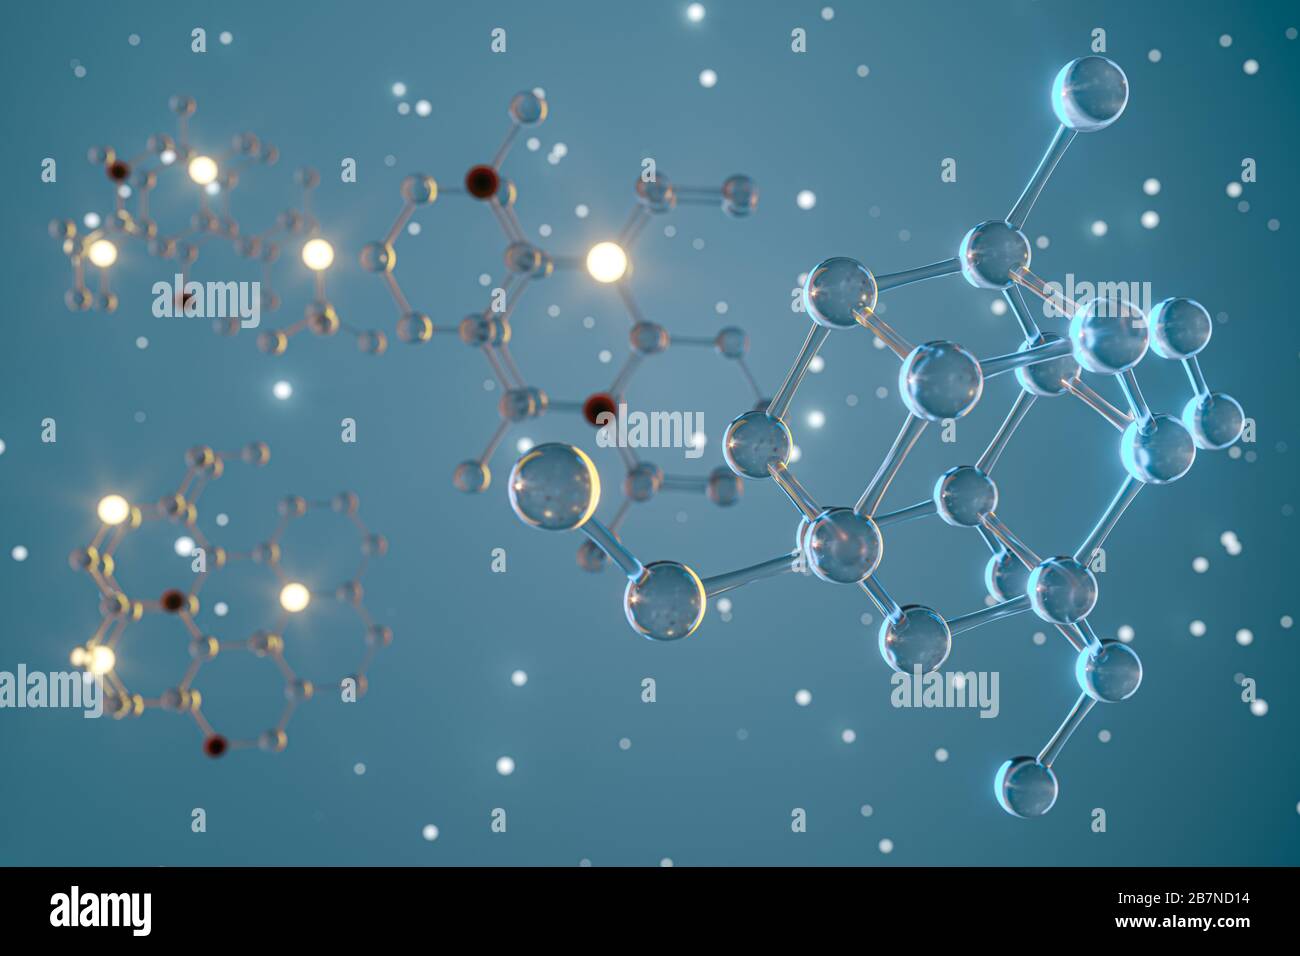 Molecole e biologia, concetto biologico, rendering 3d. Disegno digitale per computer. Foto Stock